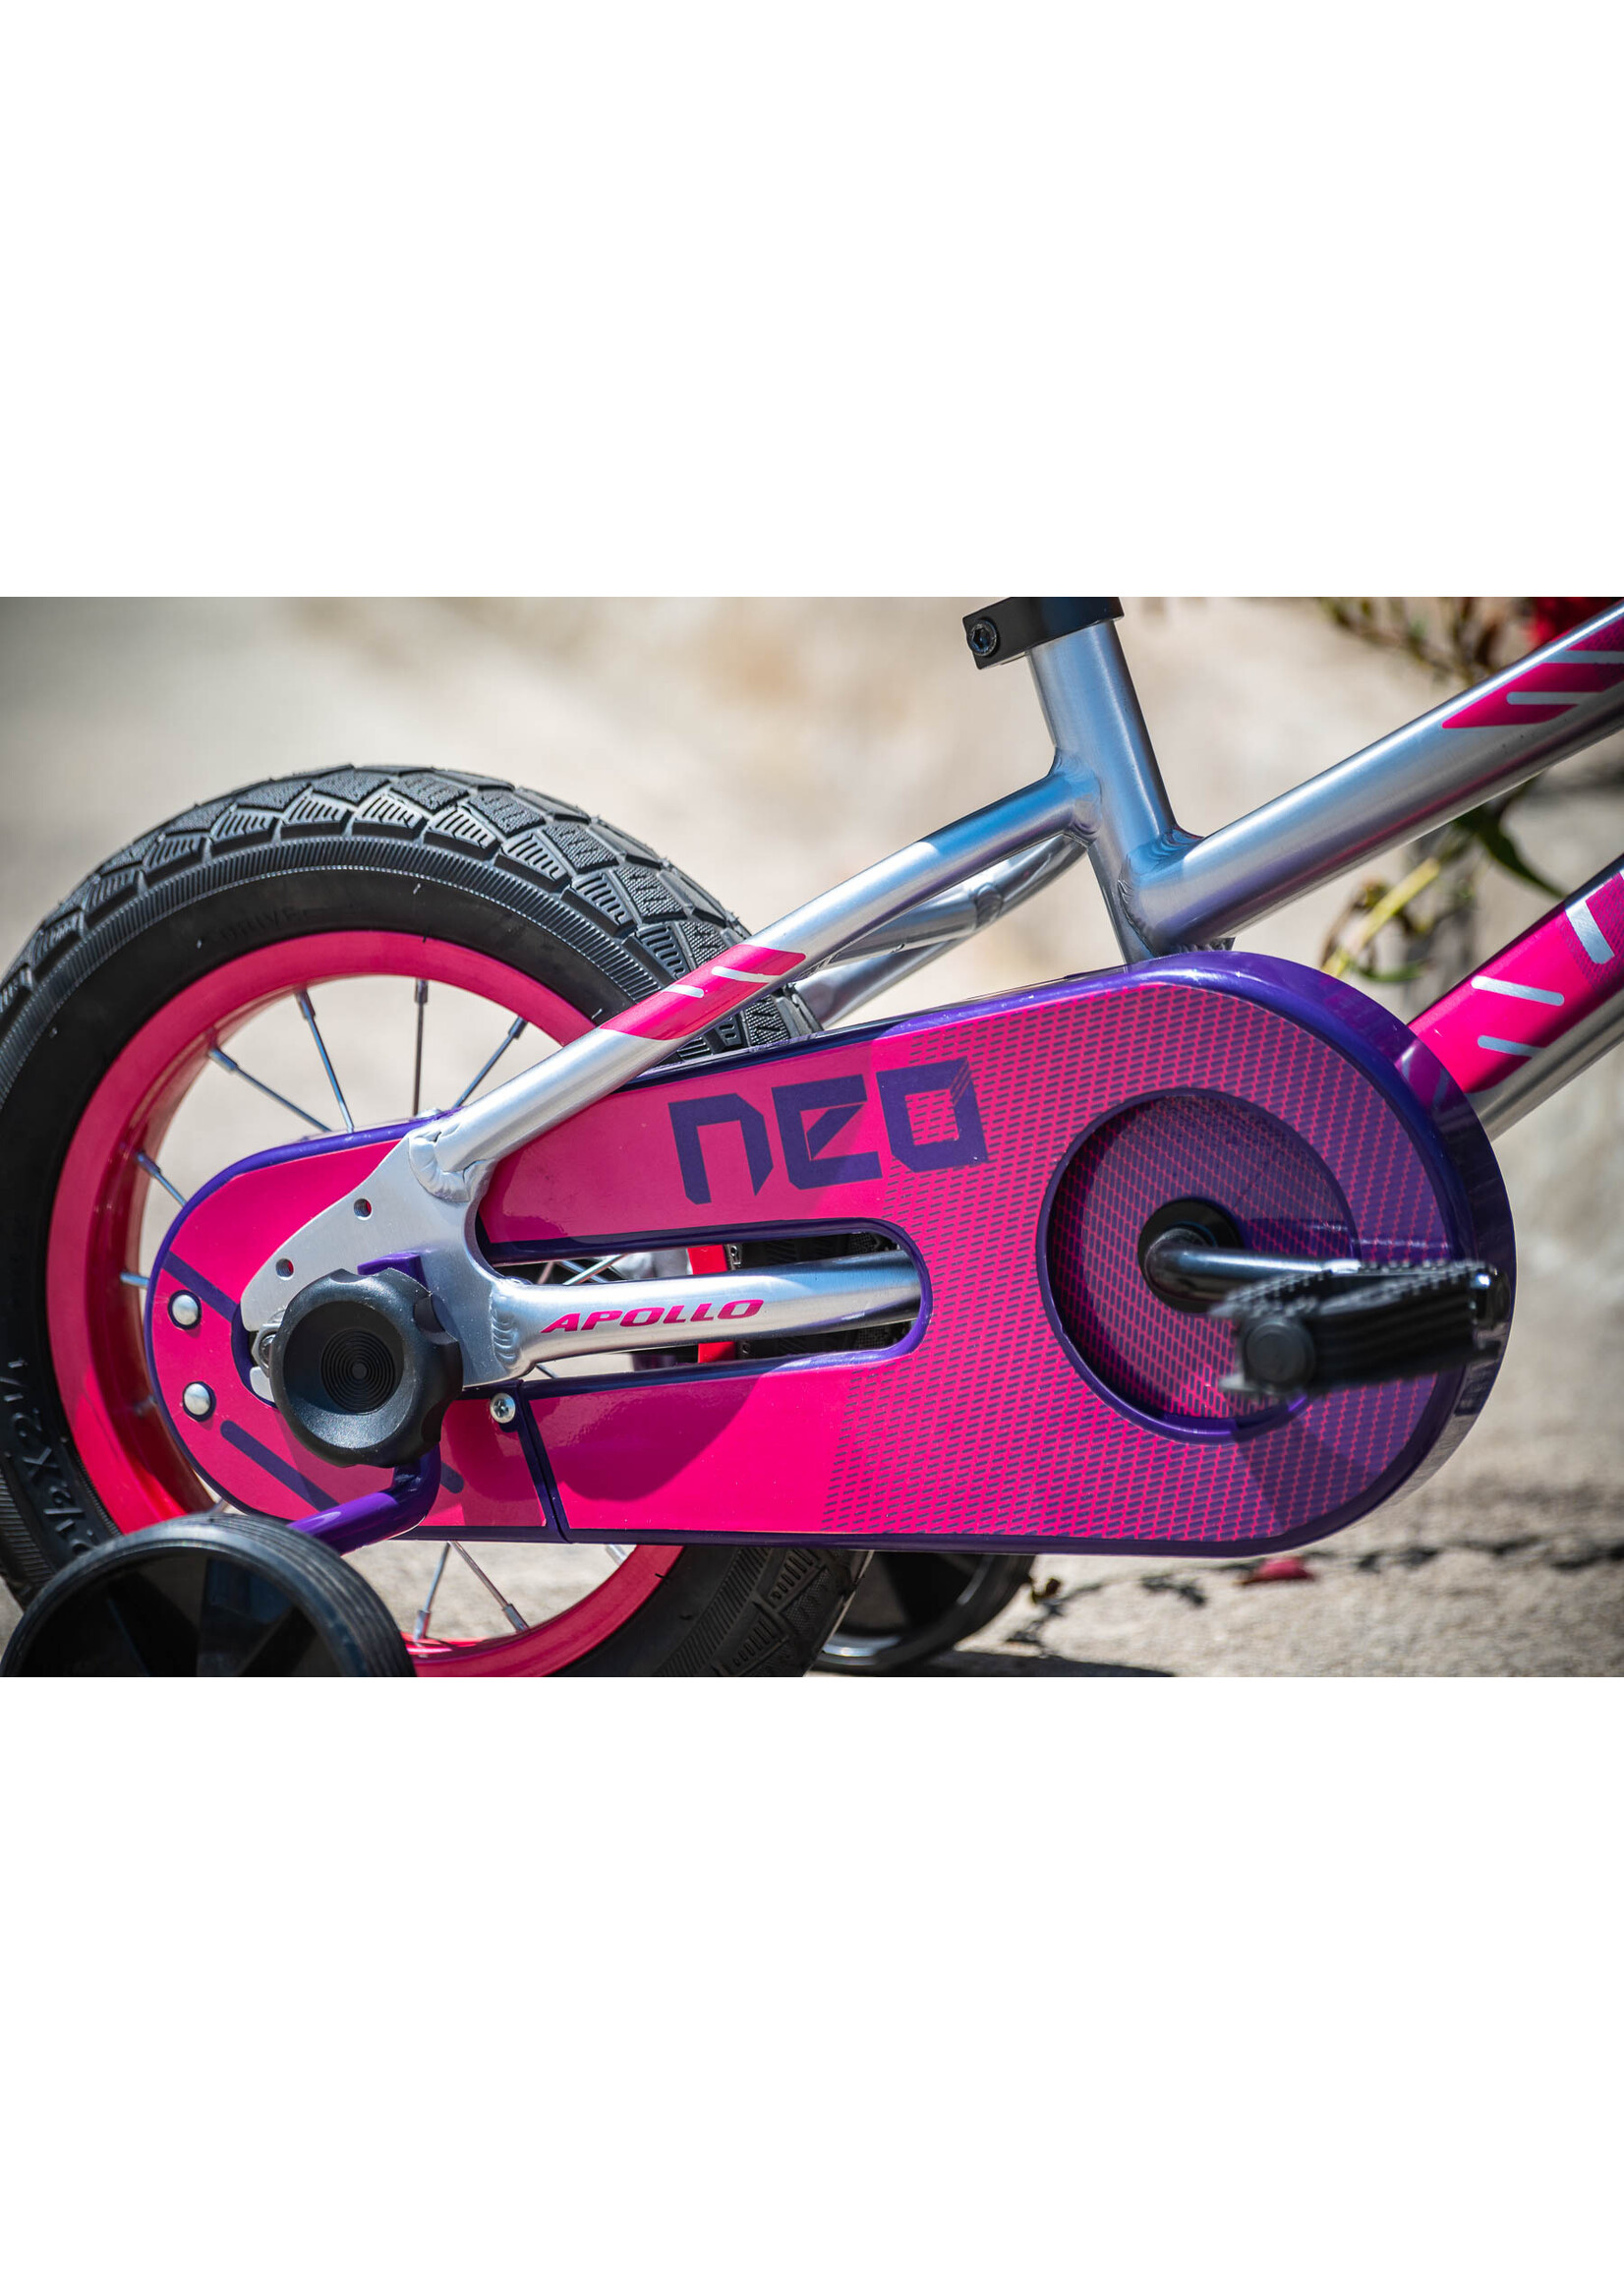 Neo+ 12 Kids Bike - Girls